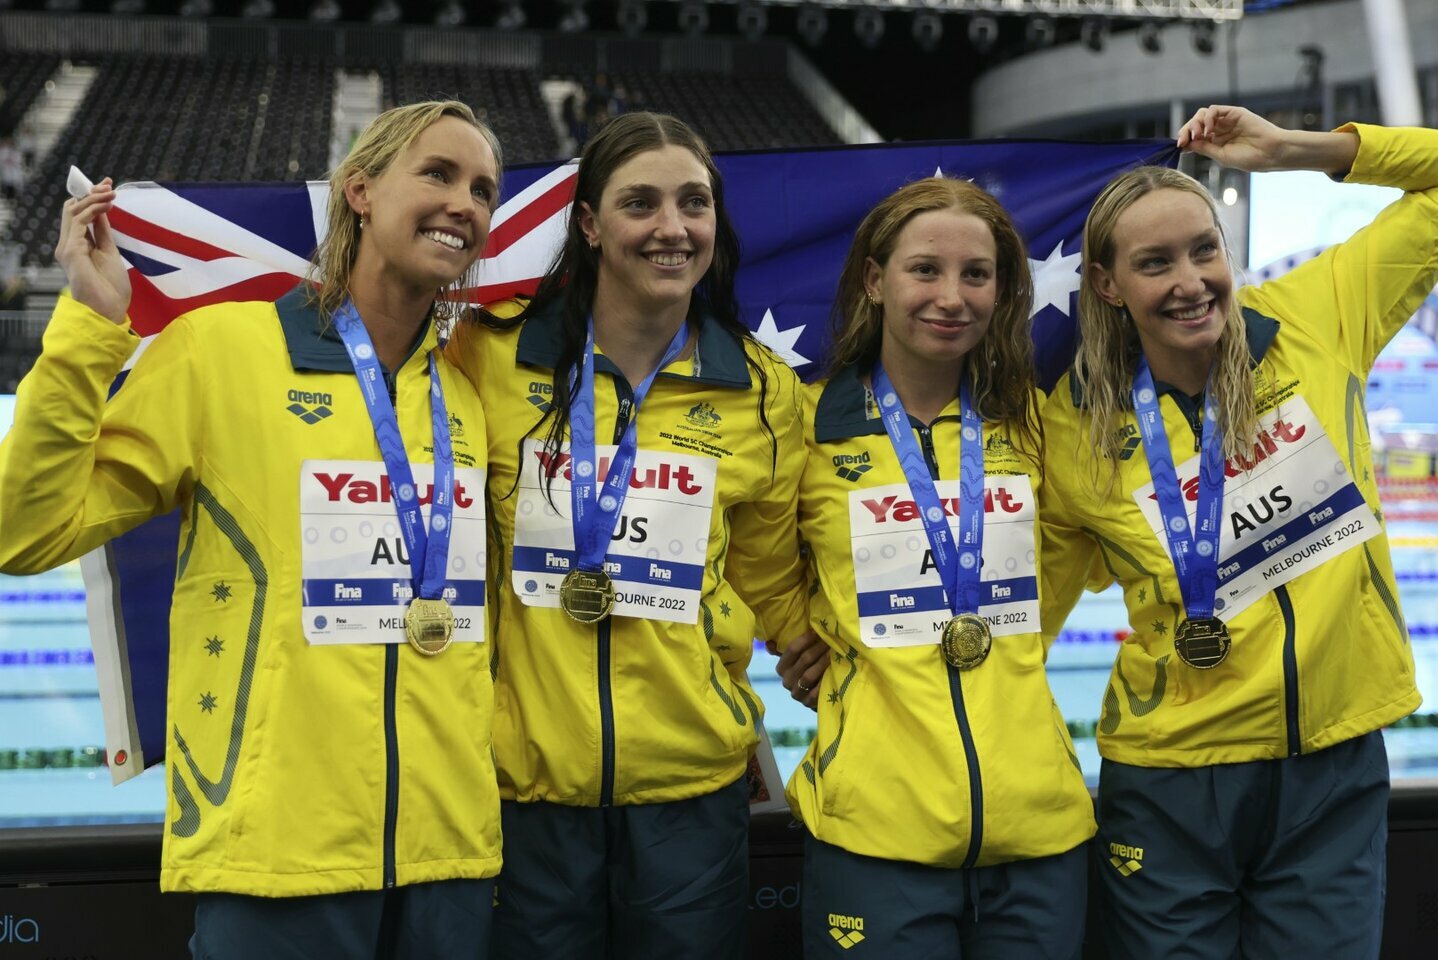 La prima giornata del campionato del mondo è stata coronata dai record mondiali di nuotatori australiani e italiani